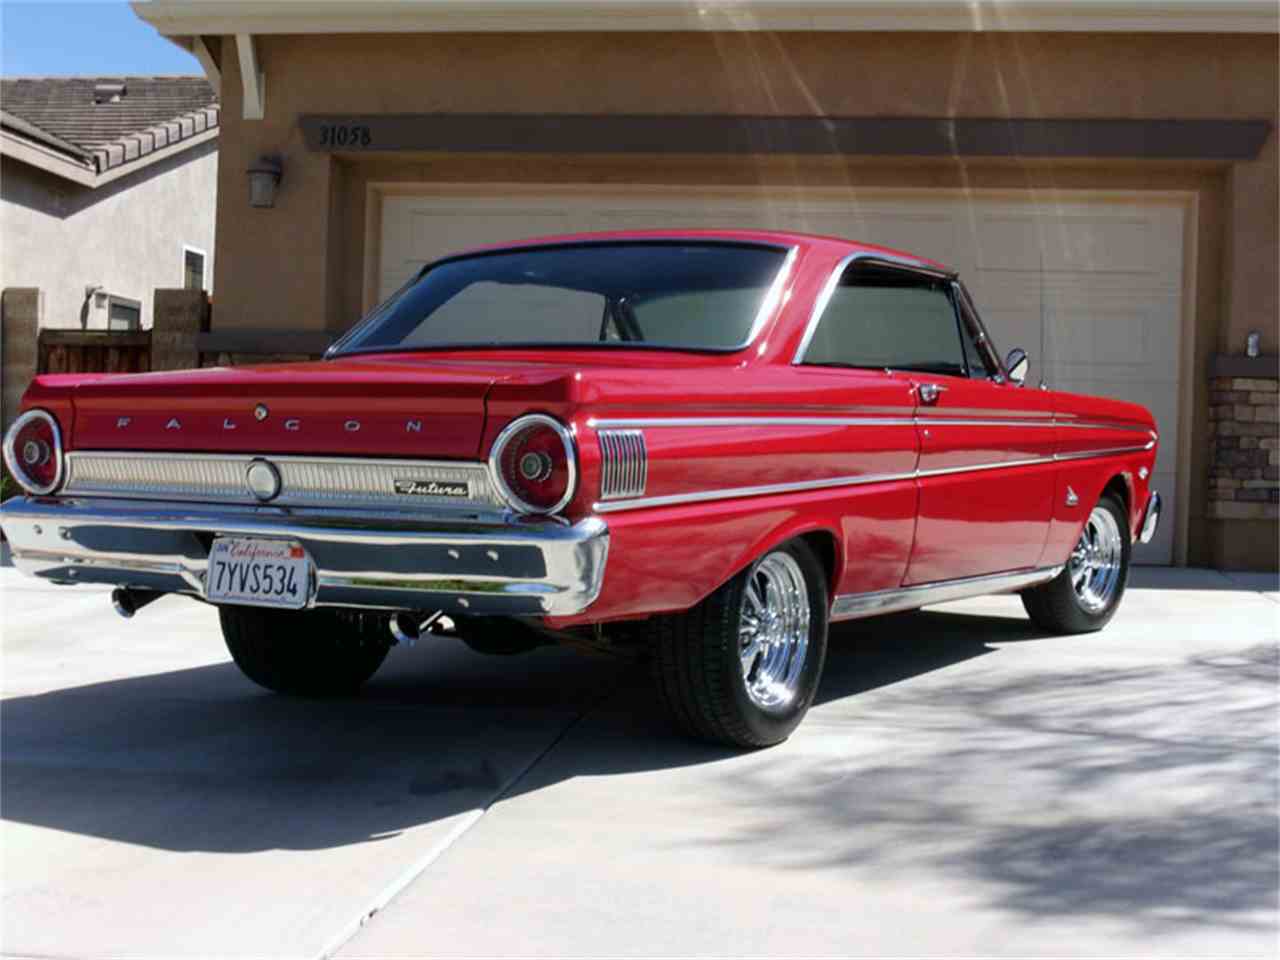 1964 Ford Falcon Futura for Sale | ClassicCars.com | CC-1032336